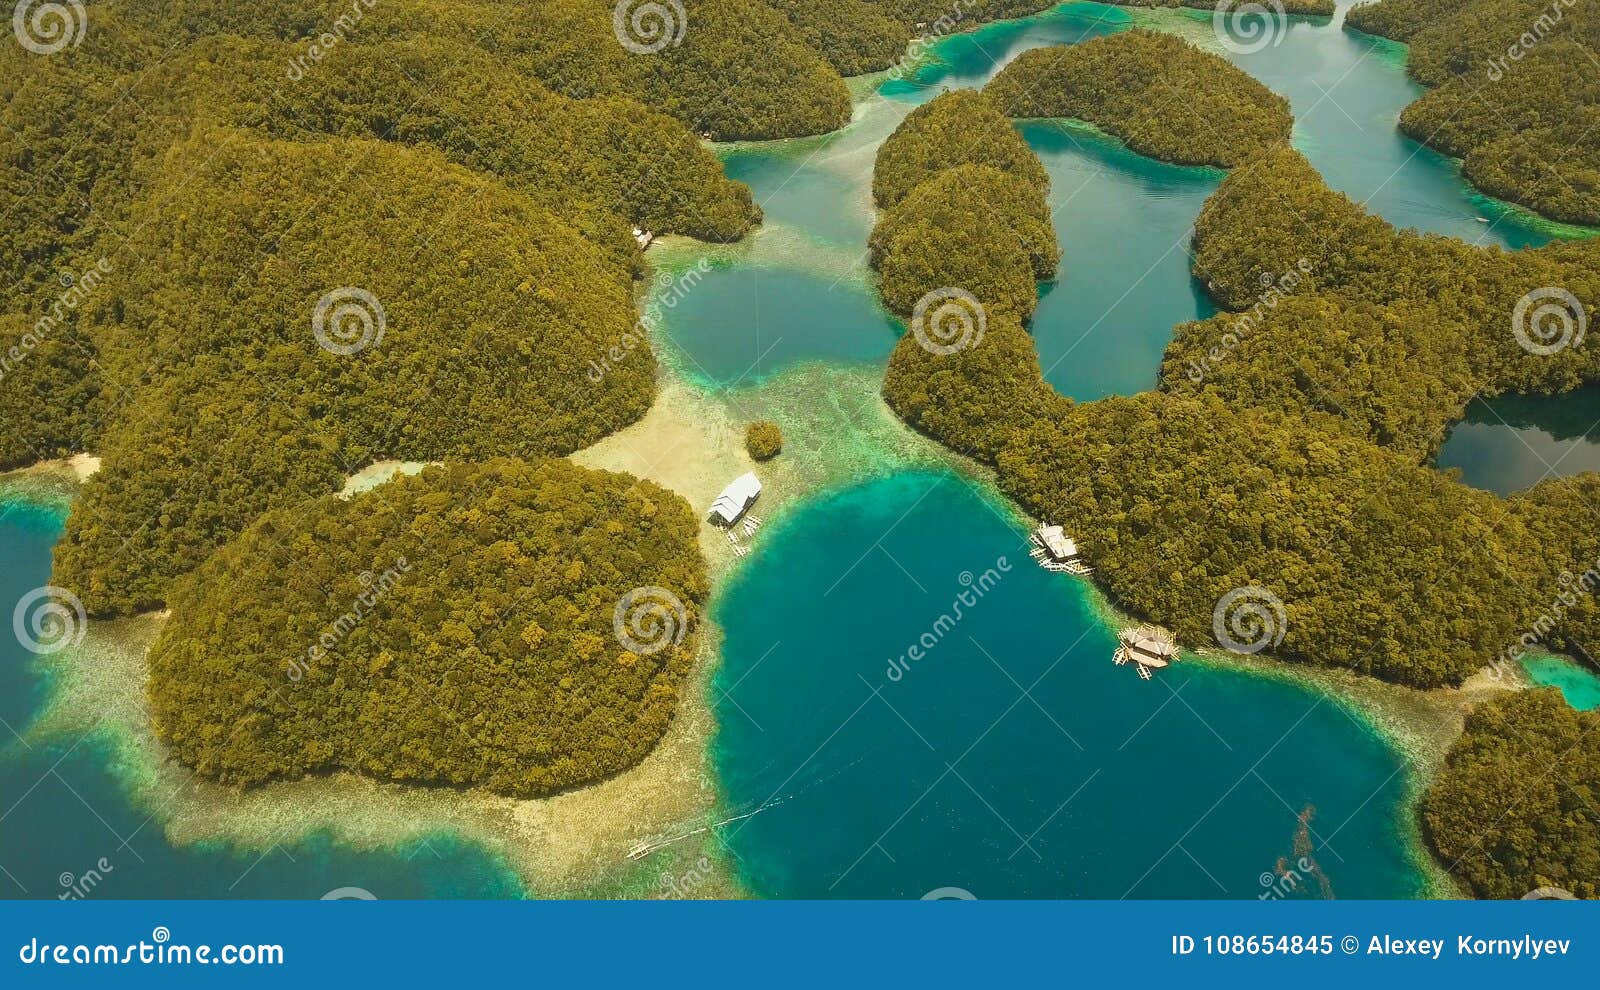 Остров кавер. Остров в воздухе. Остров Сиаргао Филиппины вид сверху. Остров Грин кавер. Бухты с зеленой водой тропики.